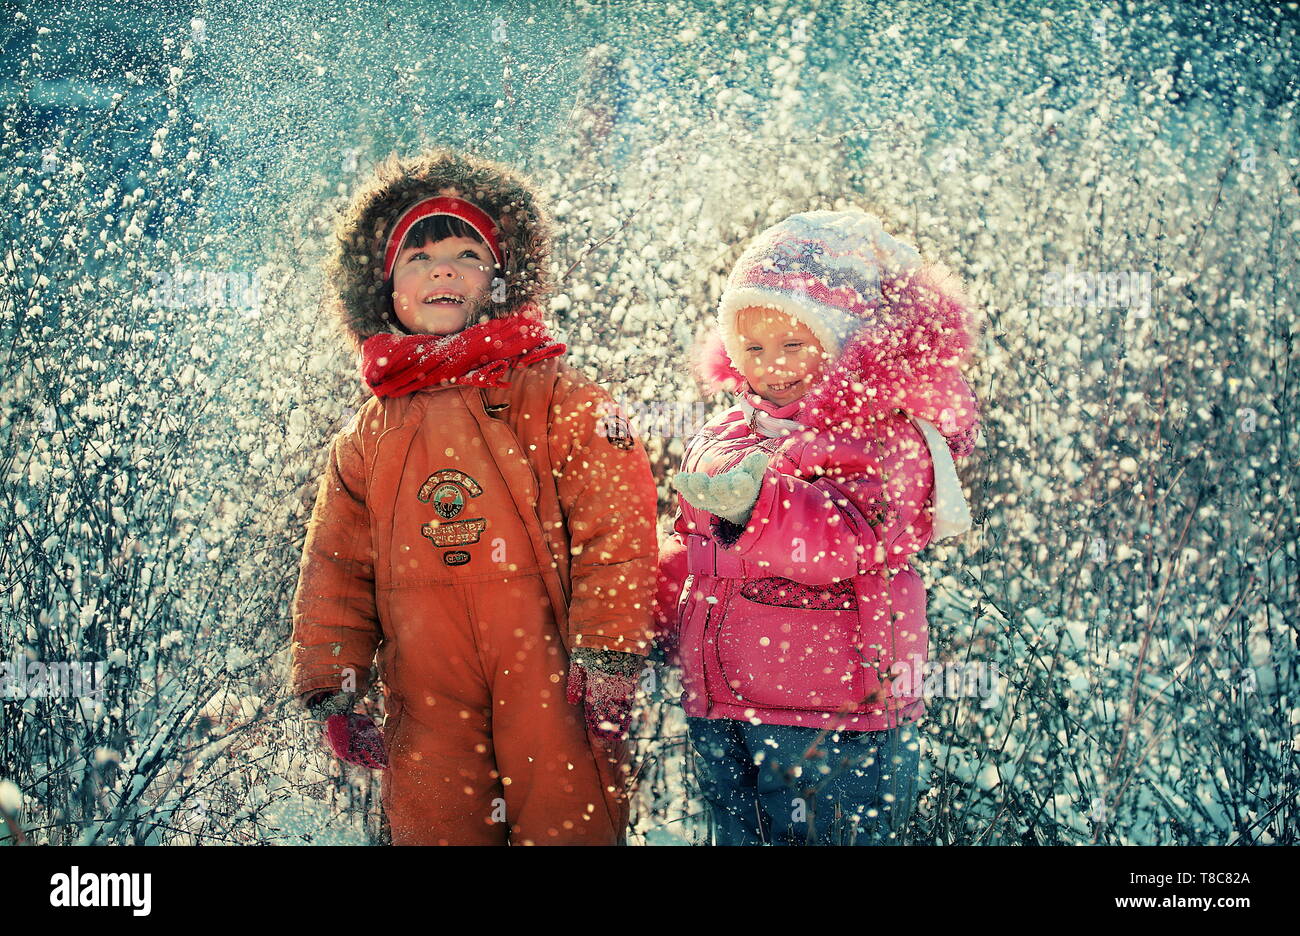 Весело падает снег. Дети радуются снегу. Зима для детей. Дети на прогулке зимой. Снегопад для детей.